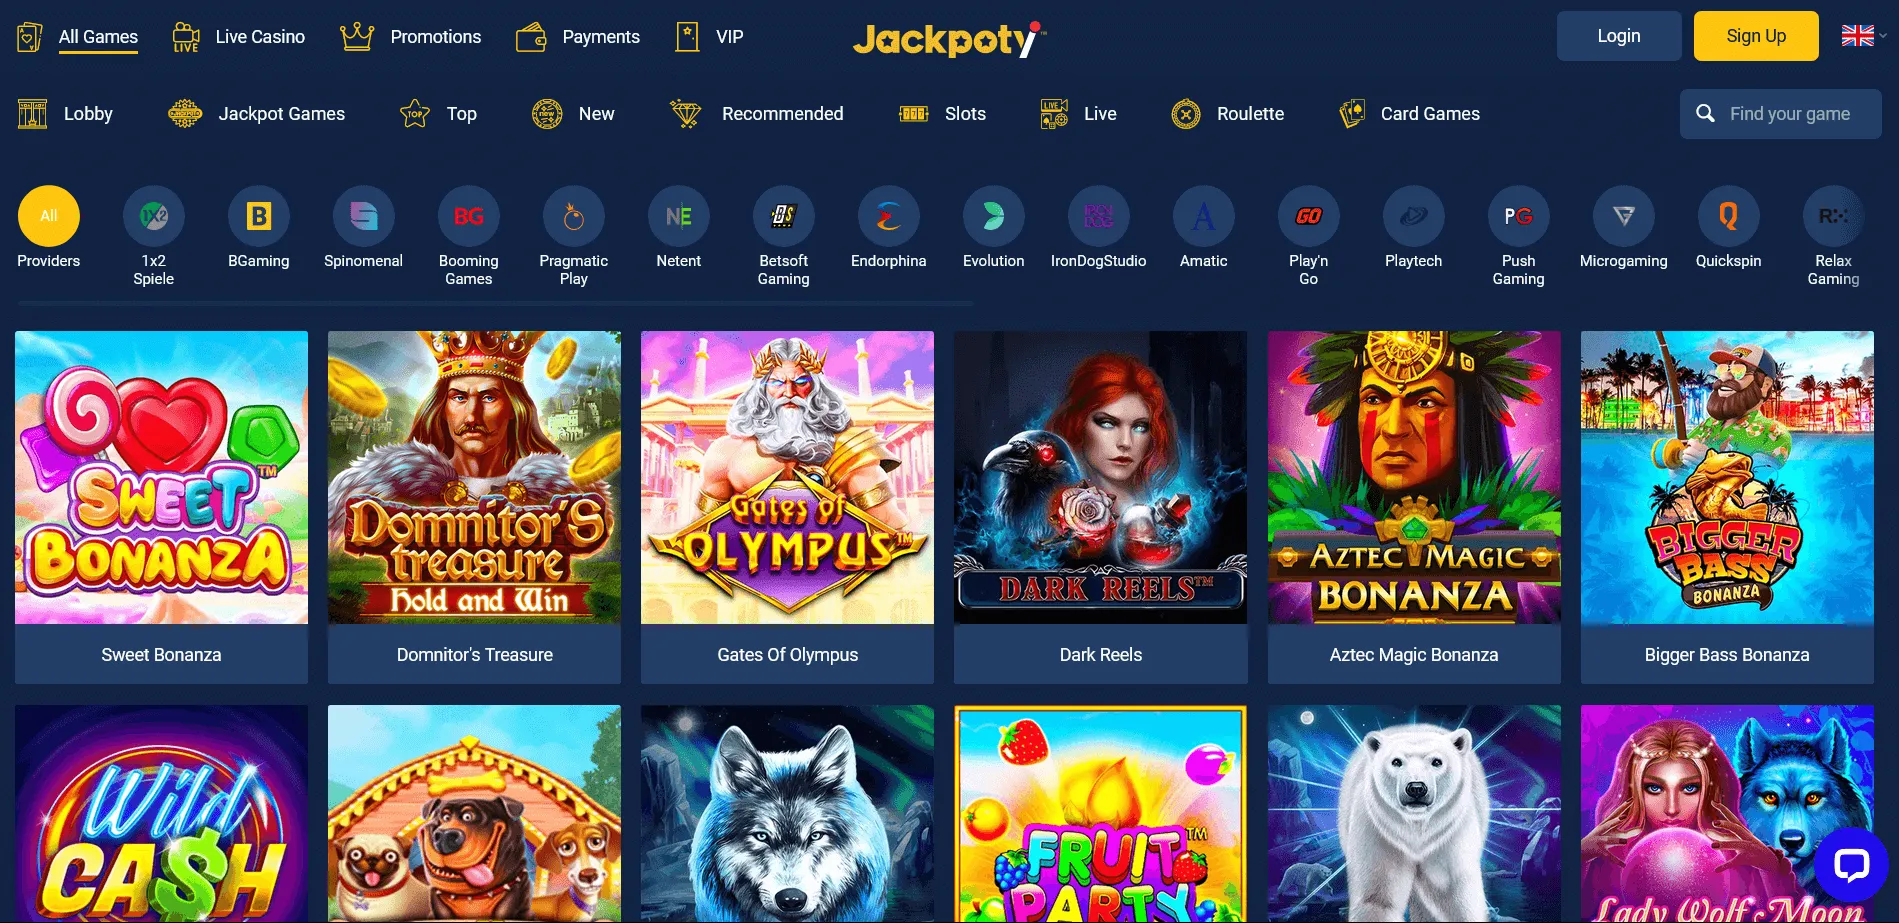 Condițiile de înregistrare și lista jocurilor populare la Jackpoty Casino